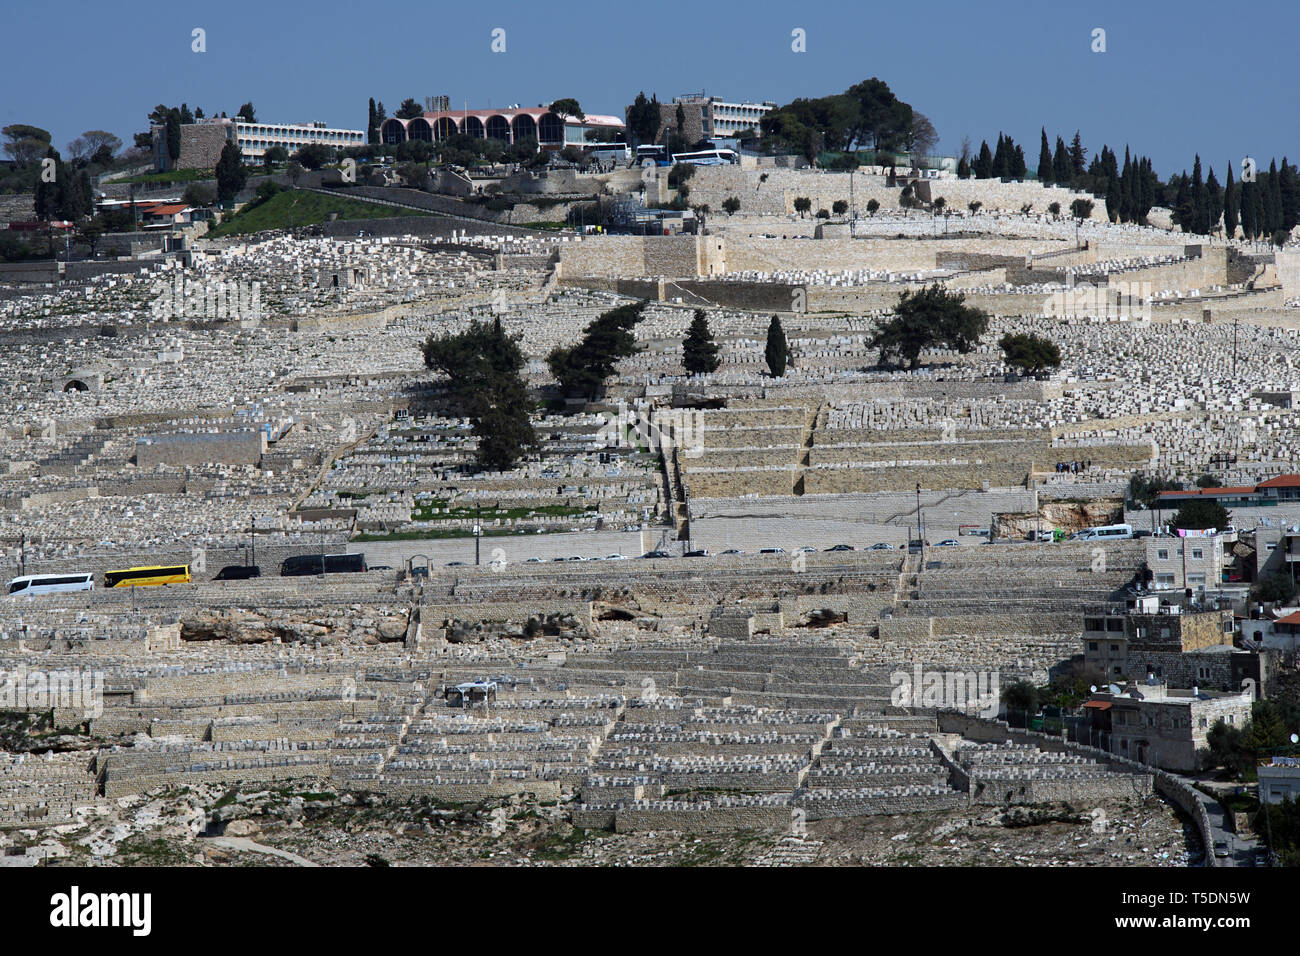 JERUSALEM ÖLBERG GRAVE YARD - Israel - MONTS DES OLIVIERS - jüdischer Friedhof - Jerusalem heilig Website © Frédéric BEAUMONT Stockfoto